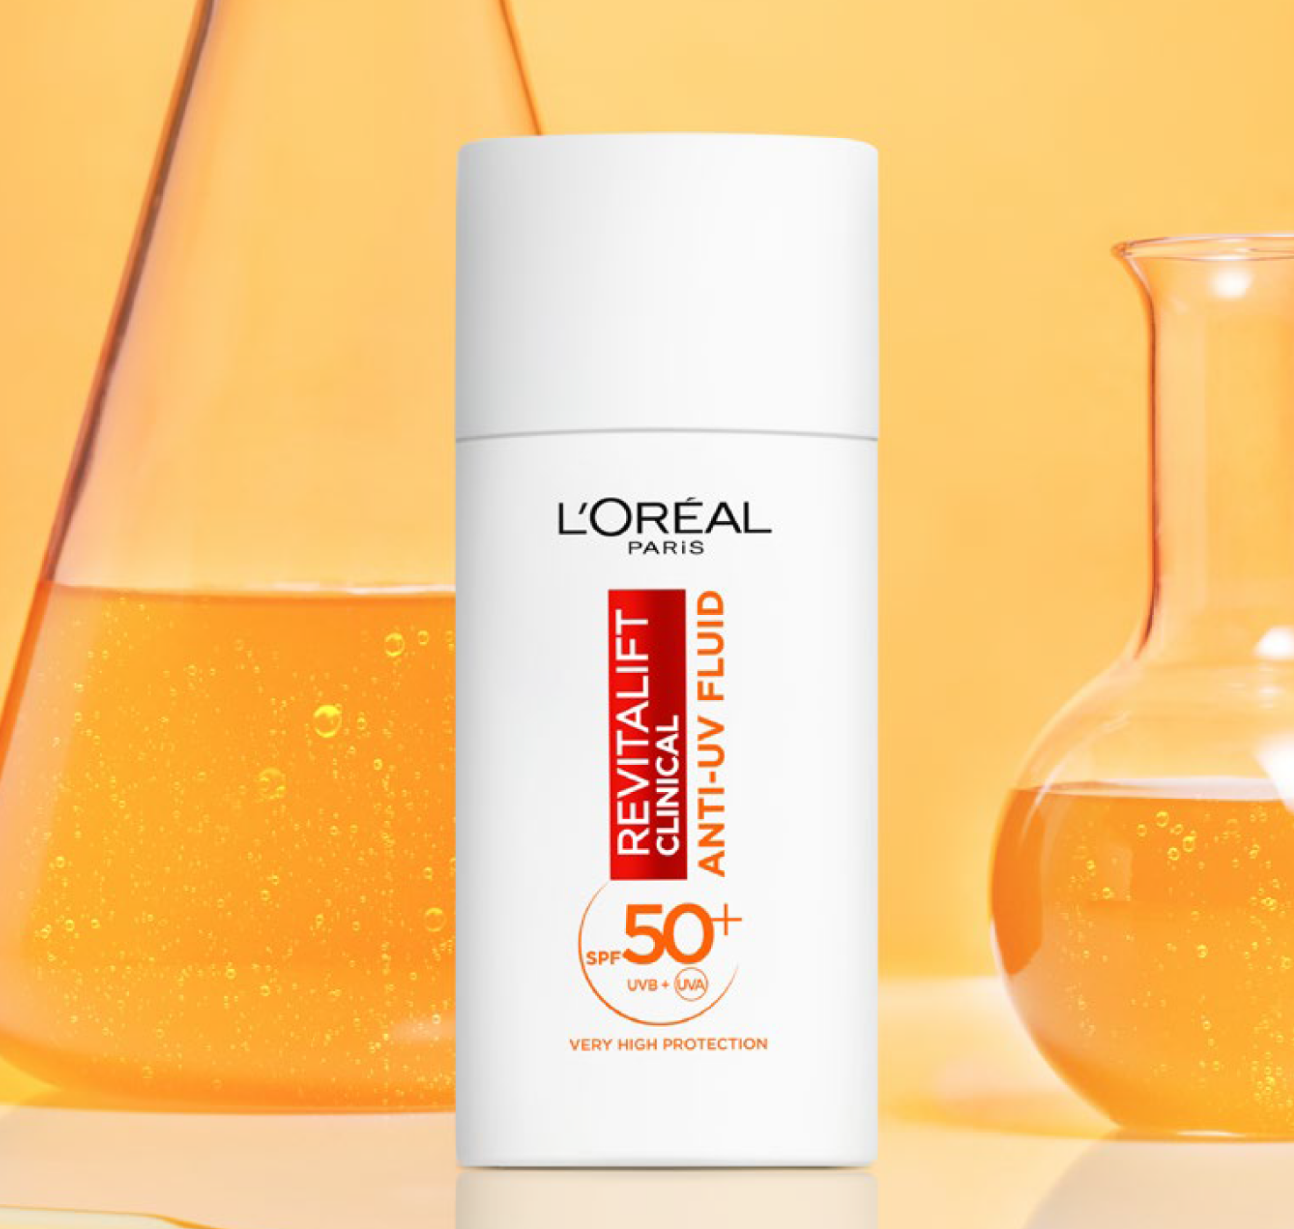 Mask Group 11 Витамин С и SPF са задължителни елементи от всеки ритуал за грижа за кожата – открийте новата линия L’Oréal Paris Revitalift и изпробайте продуктите